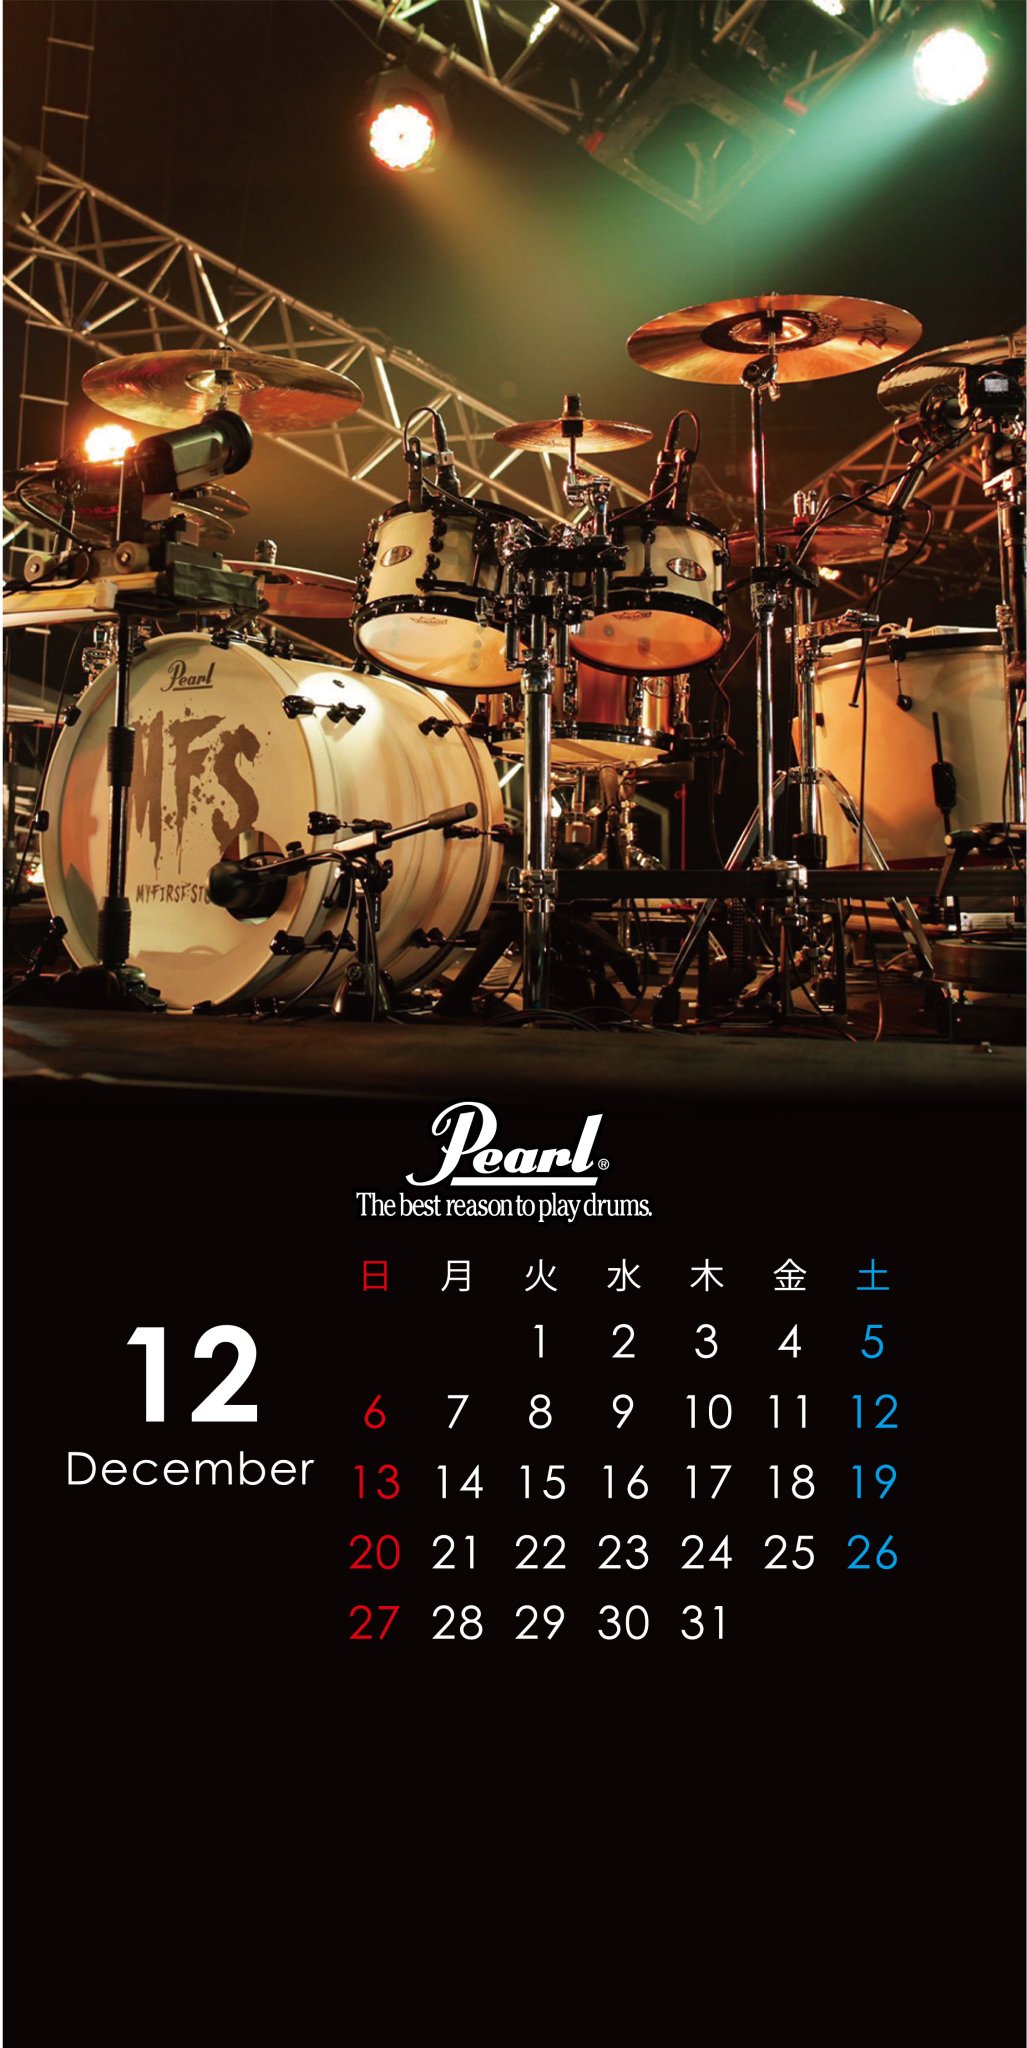 Twitter पर パール楽器製造株式会社 スマホ壁紙12月 アーティスト ドラムセット をカレンダーにしたスマホ壁紙を毎月1日に配信致します 12月はkid Zさん My First Story のドラムセットです